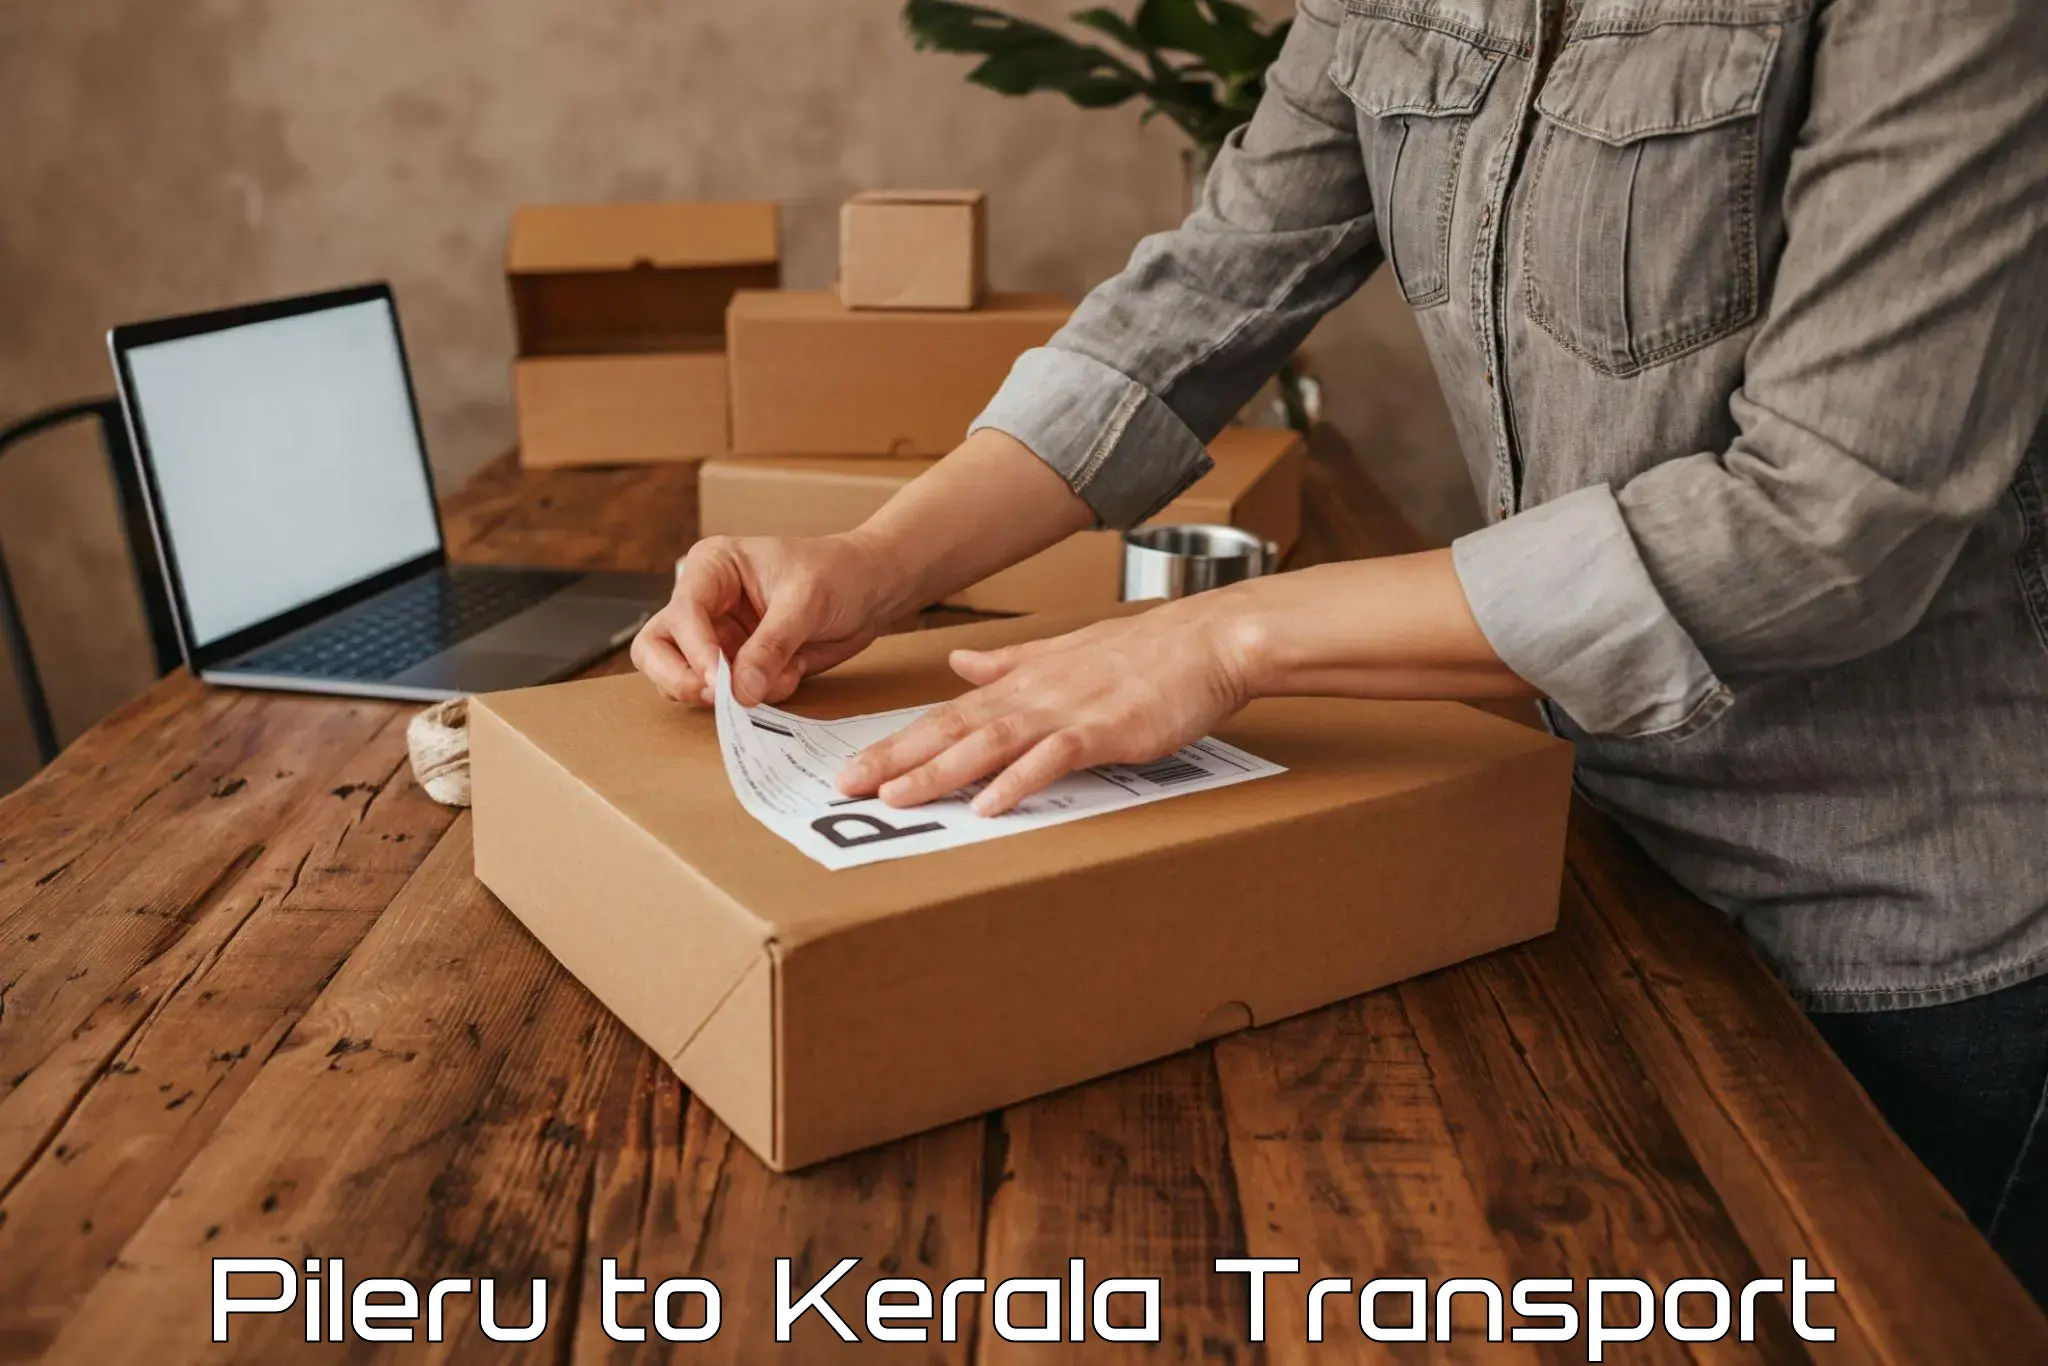 Vehicle transport services Pileru to Kerala